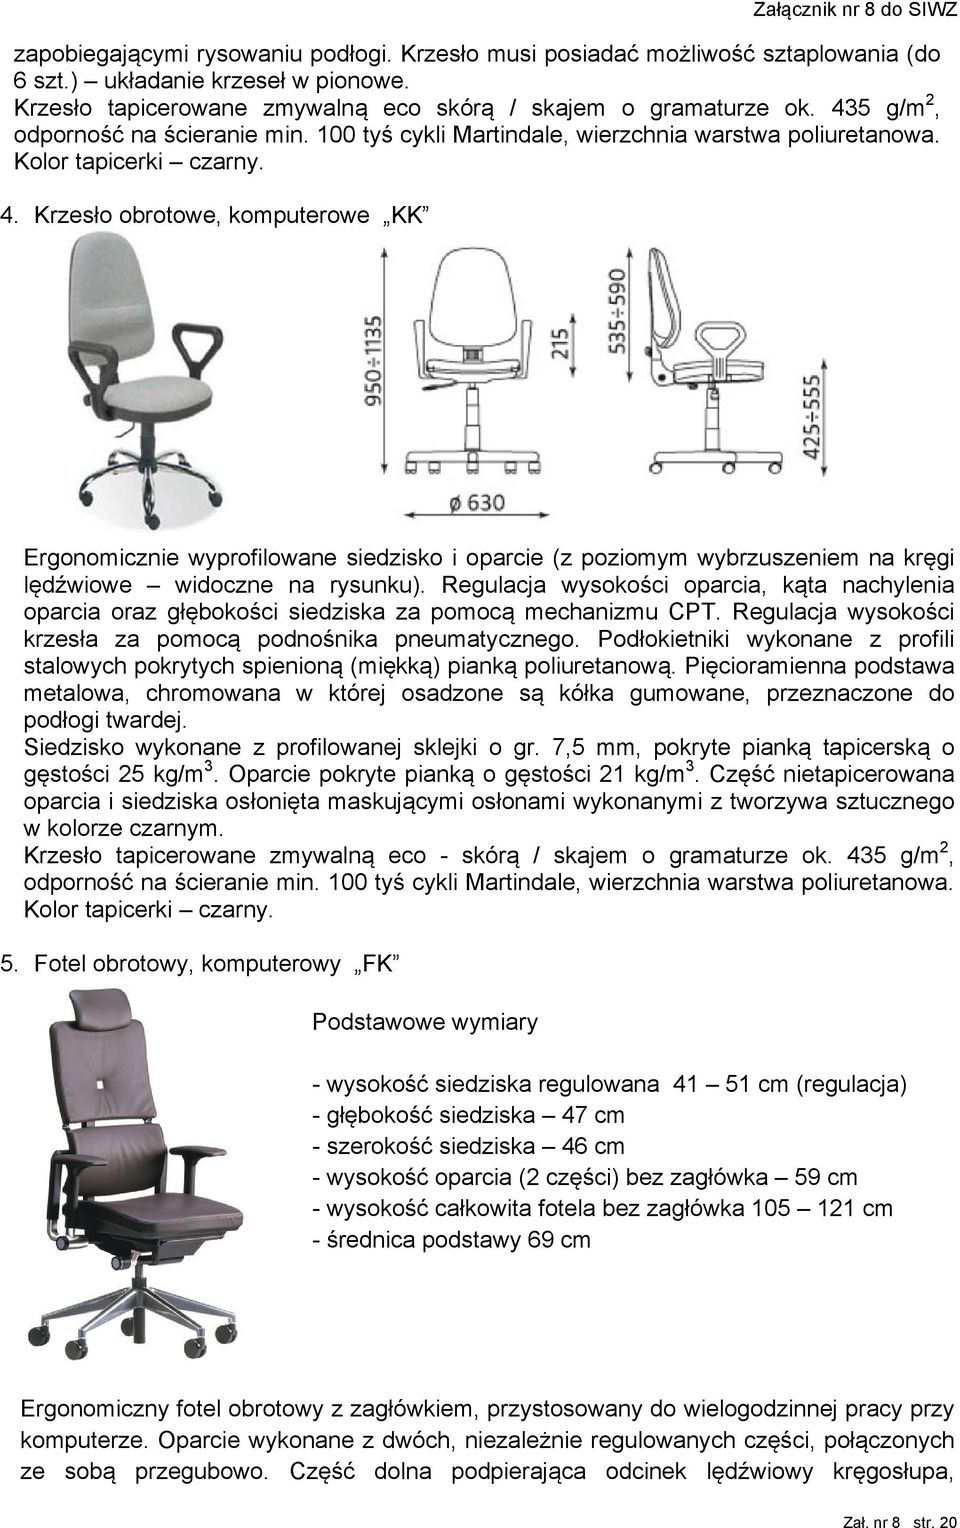 Krzesło obrotowe, komputerowe KK Ergonomicznie wyprofilowane siedzisko i oparcie (z poziomym wybrzuszeniem na kręgi lędźwiowe widoczne na rysunku).